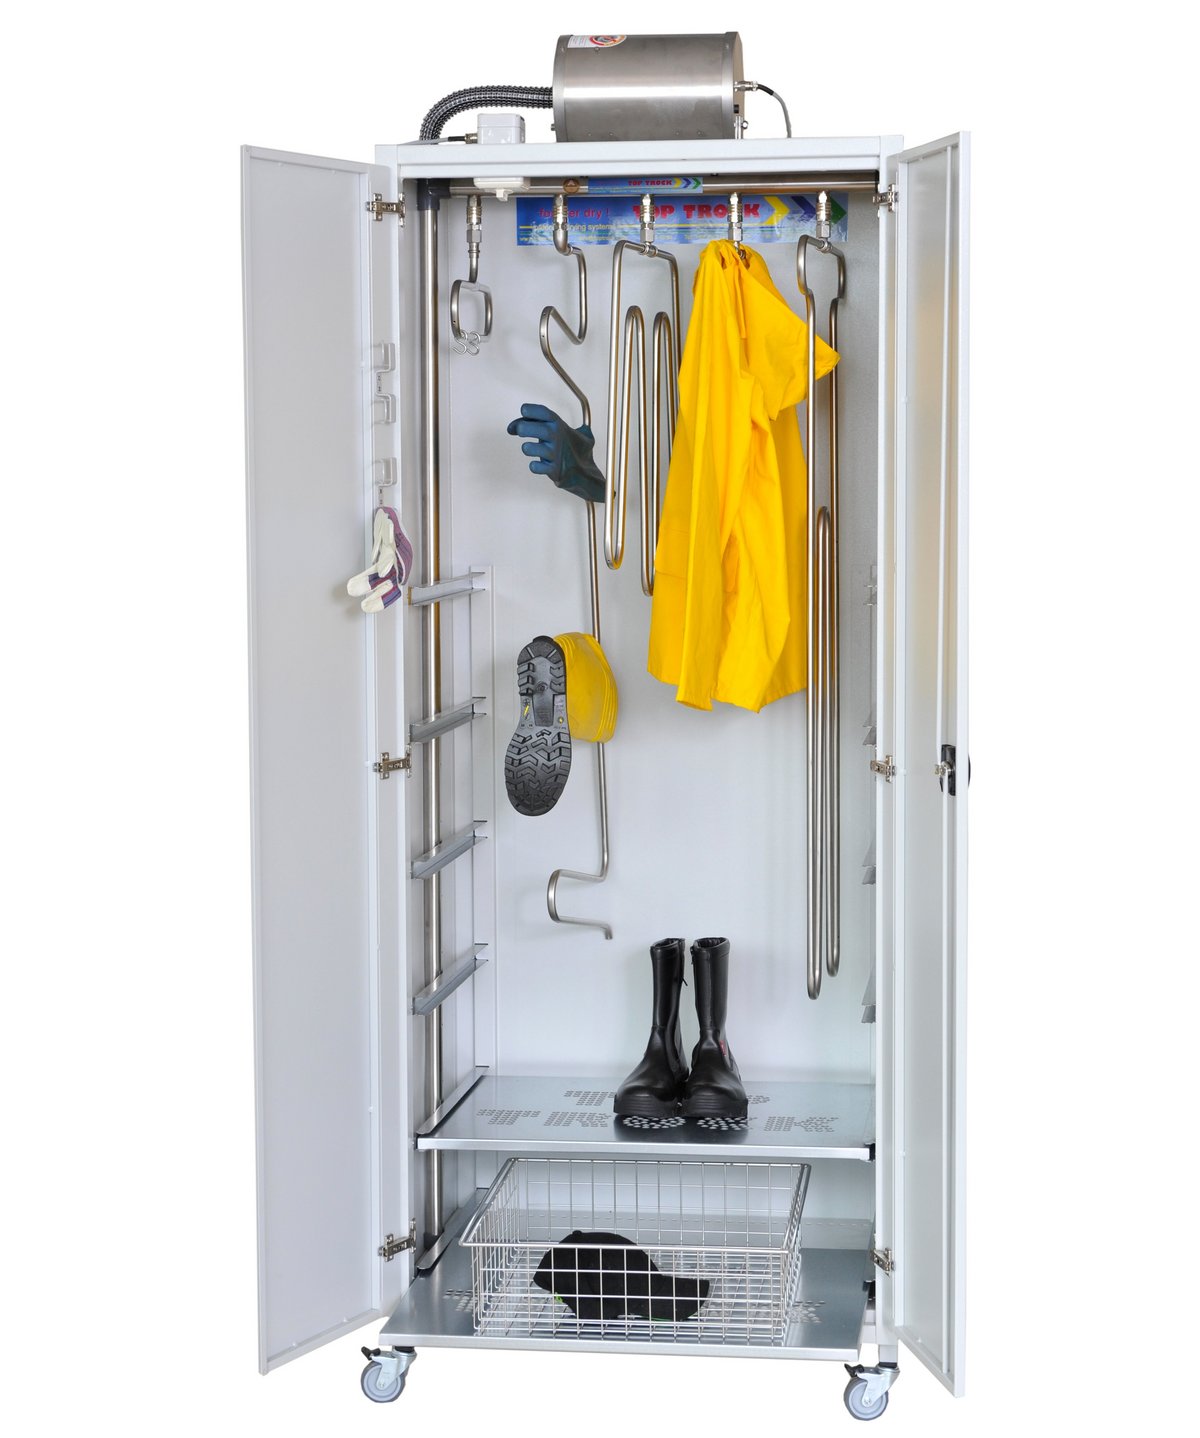 Multidry dryer cabinet